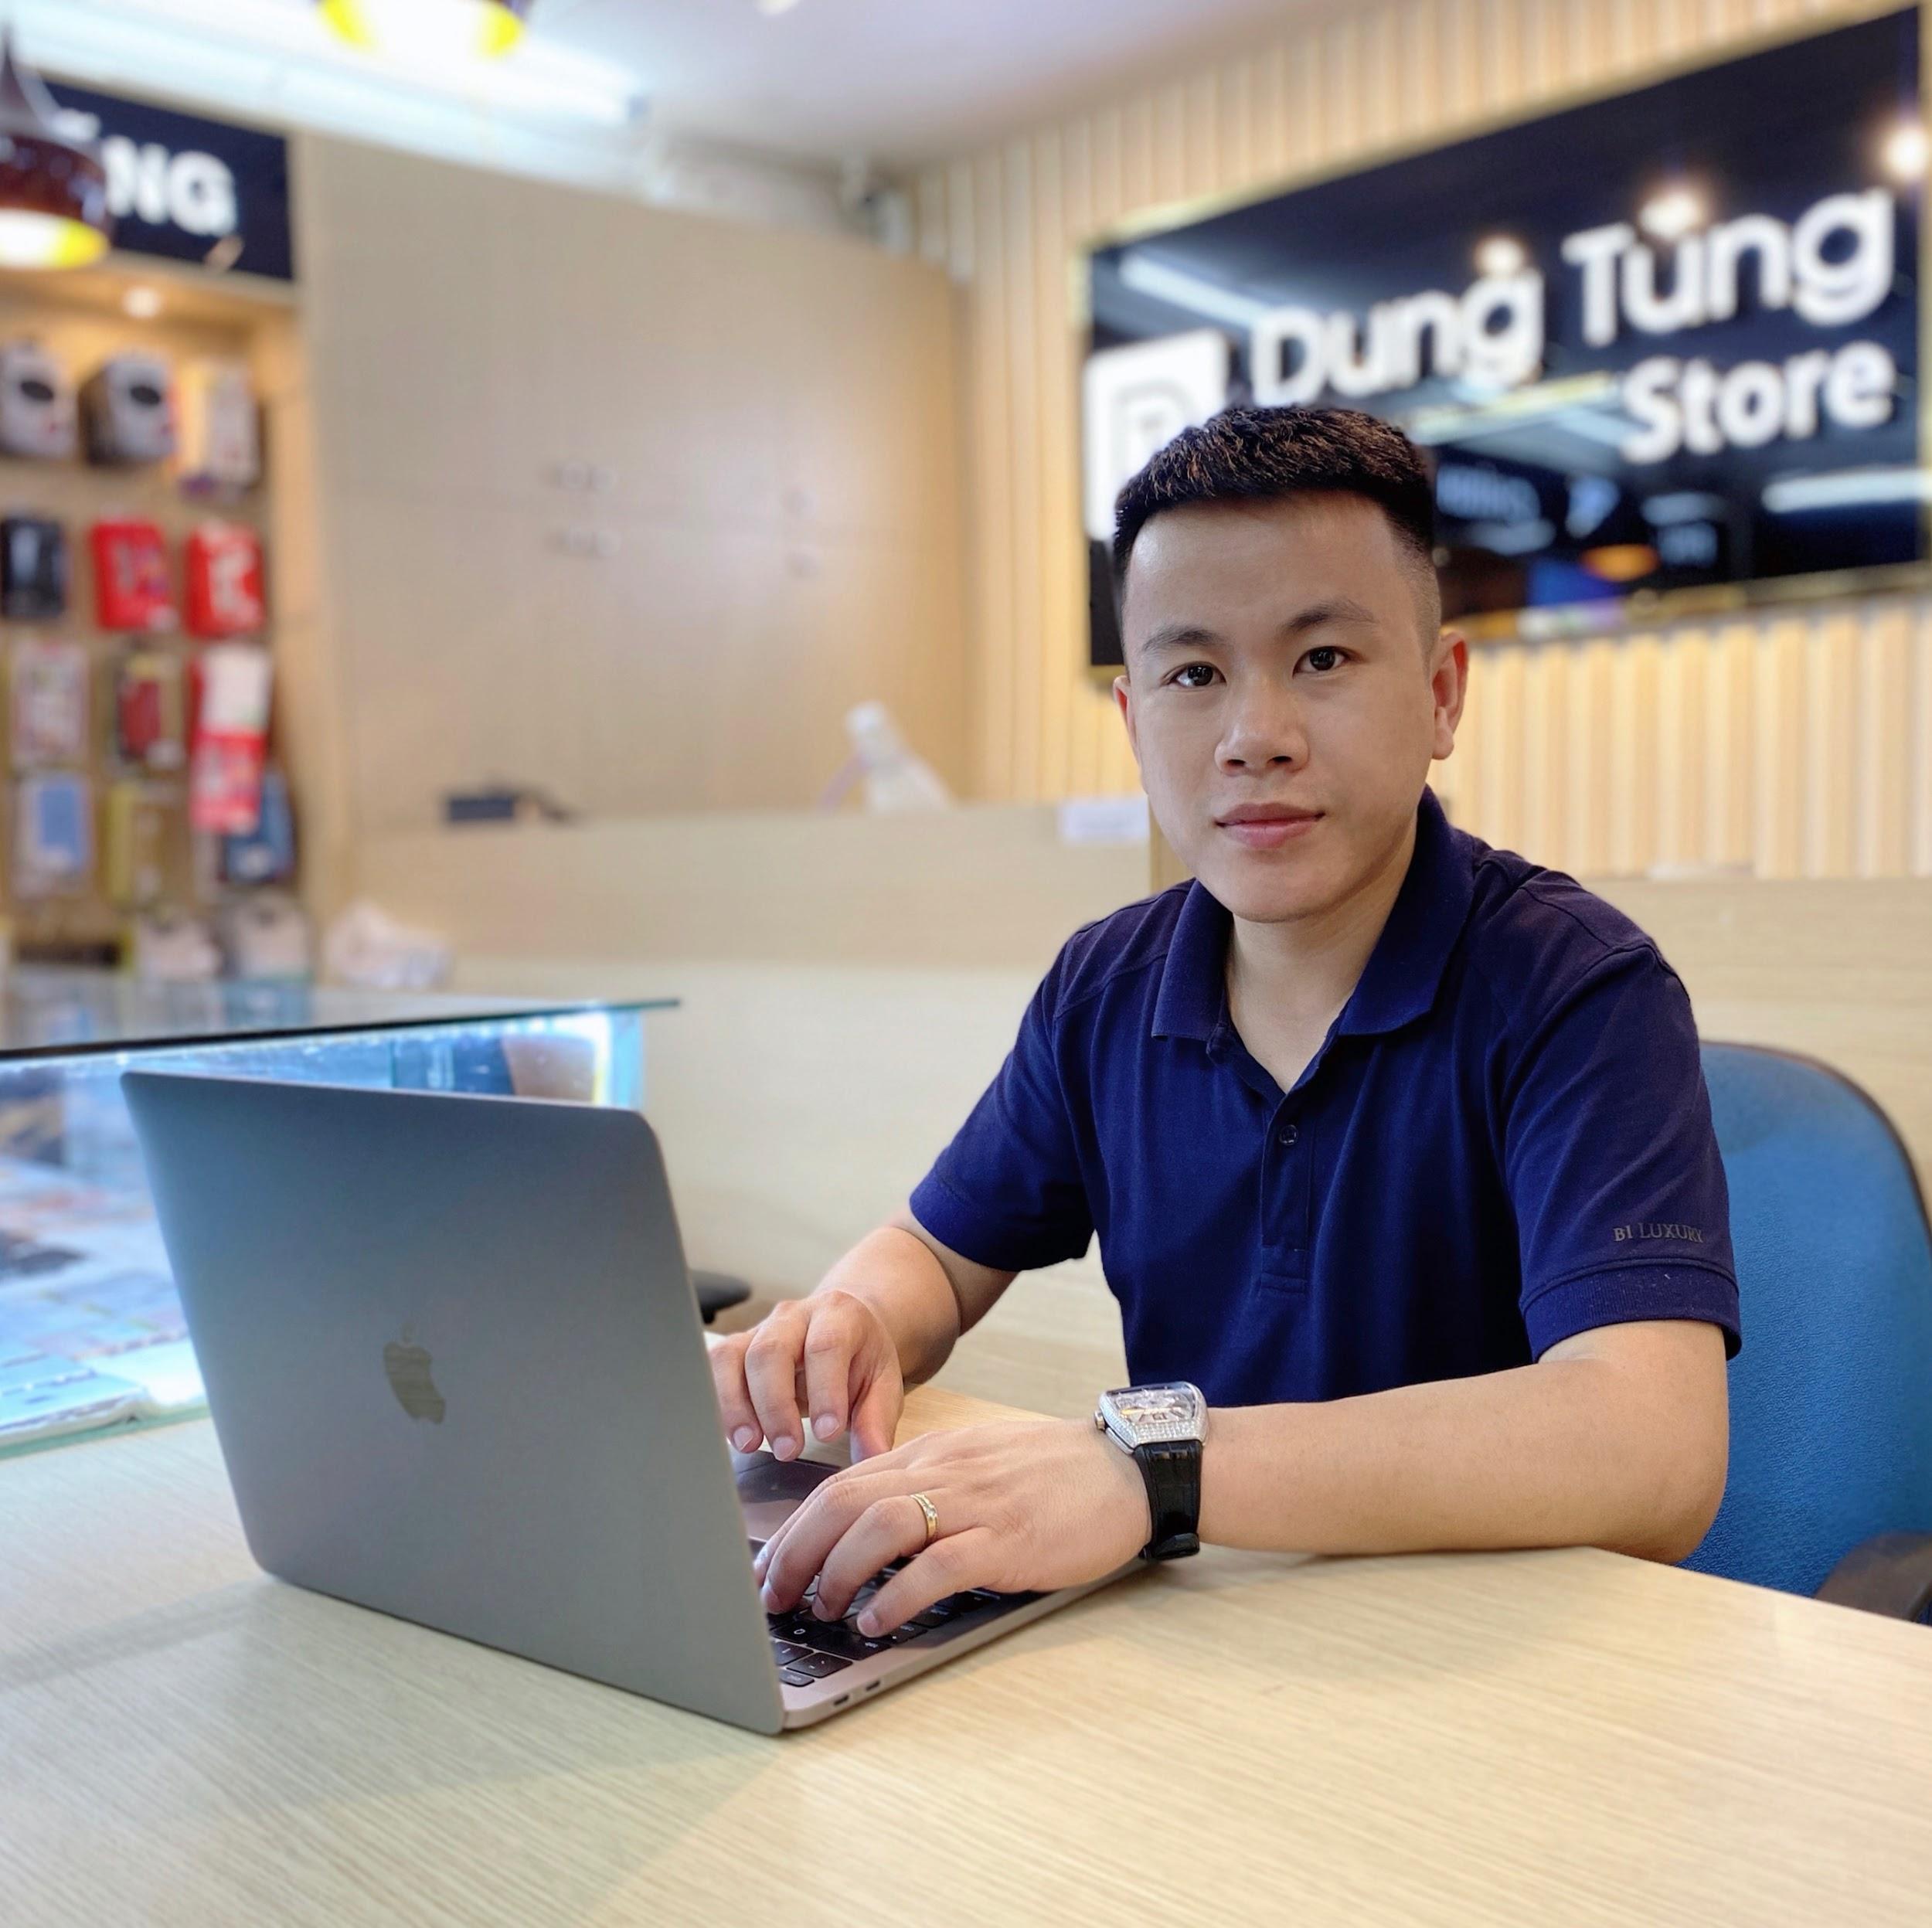 CEO Phạm Thanh Tùng và hành trình xây dựng thương hiệu Dung Tùng Store uy tín - 1